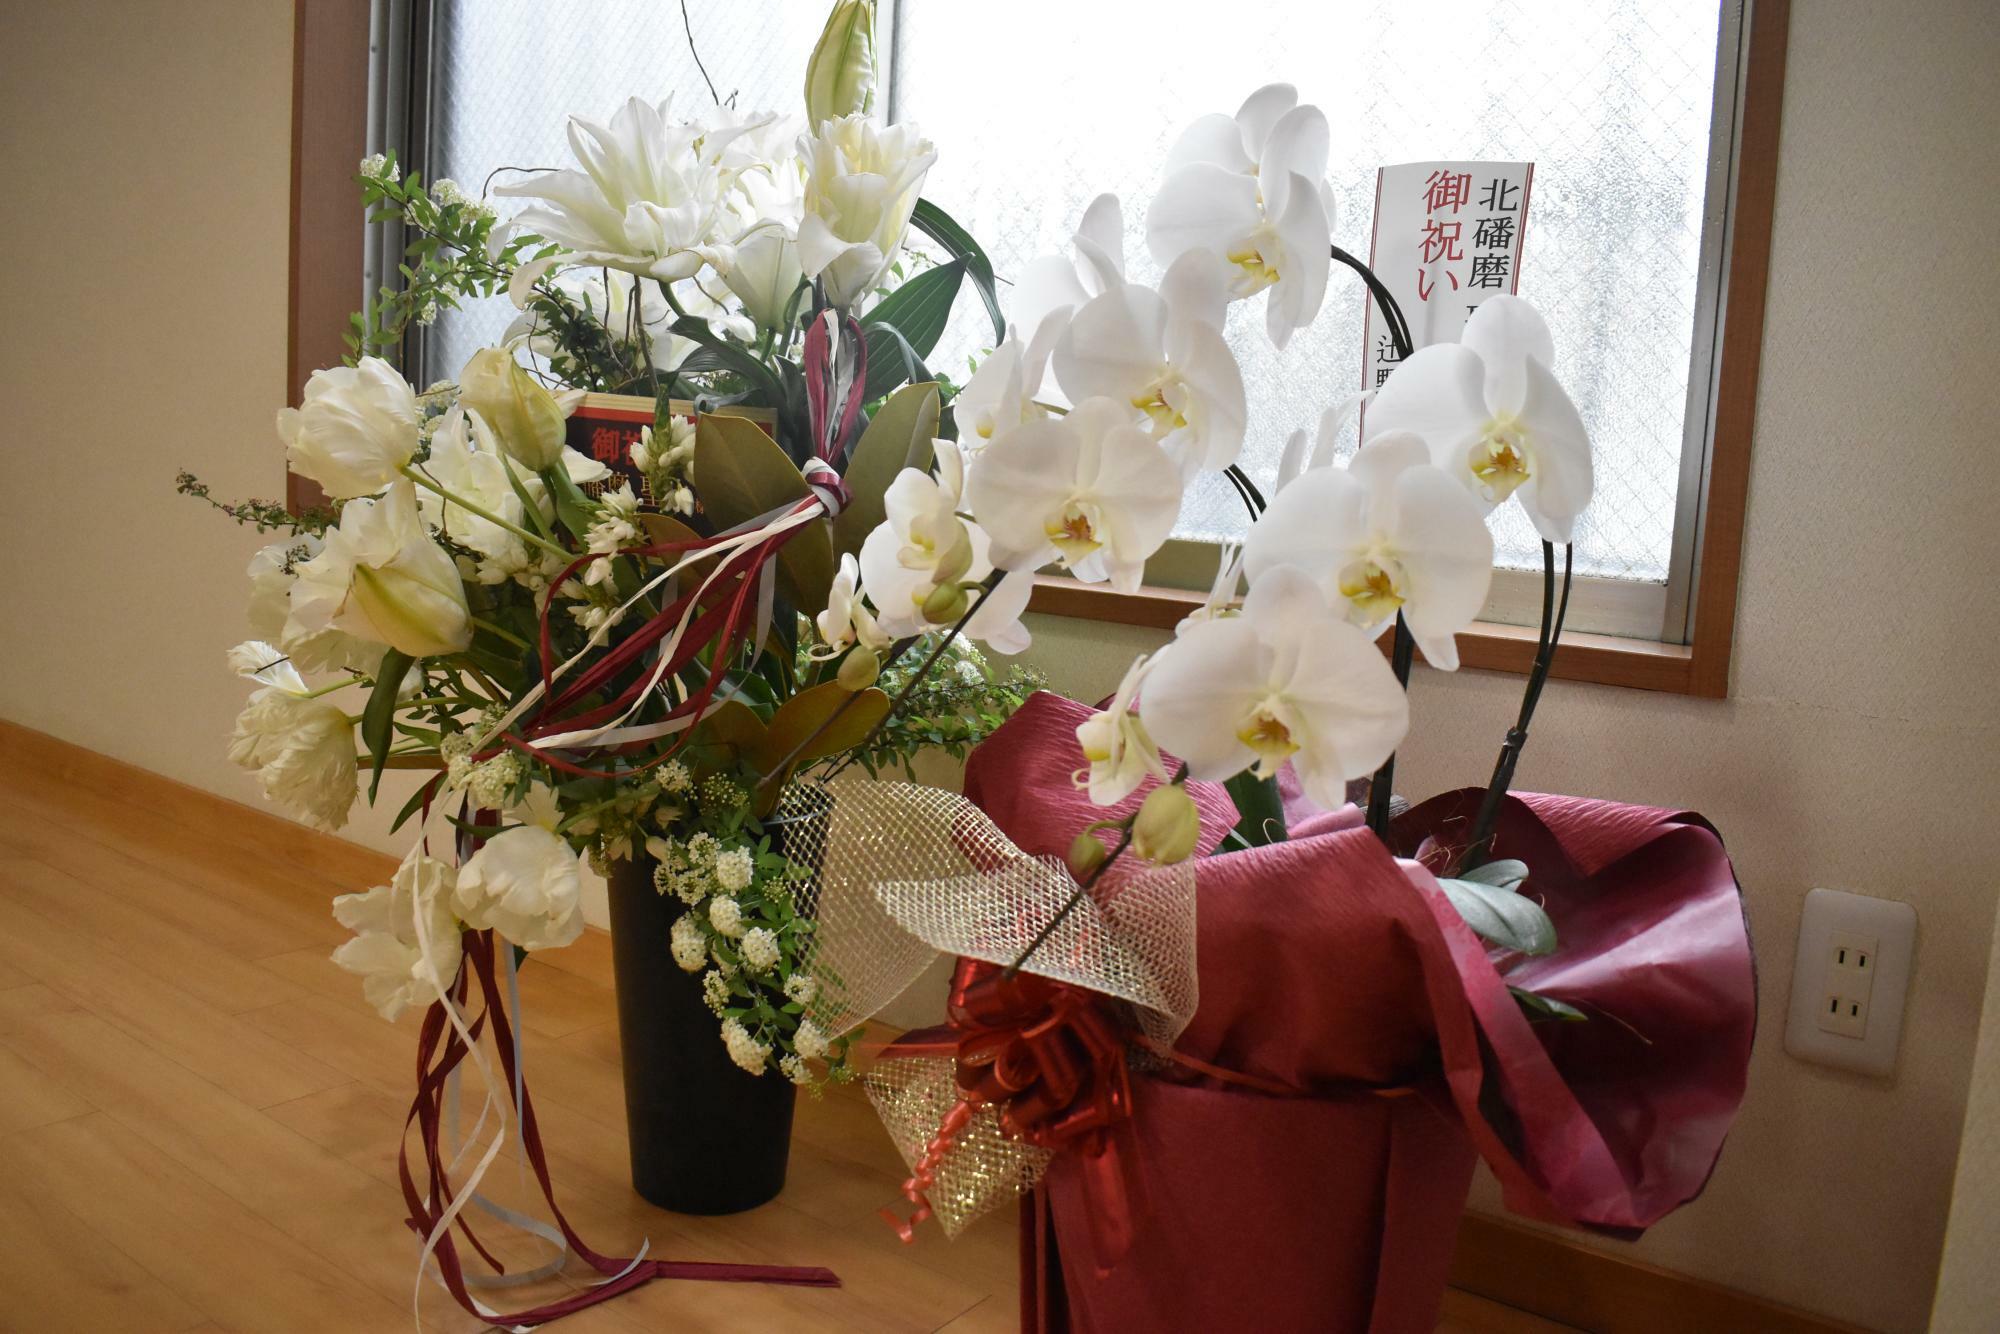 部屋には再十両のお祝いの花が飾られていた